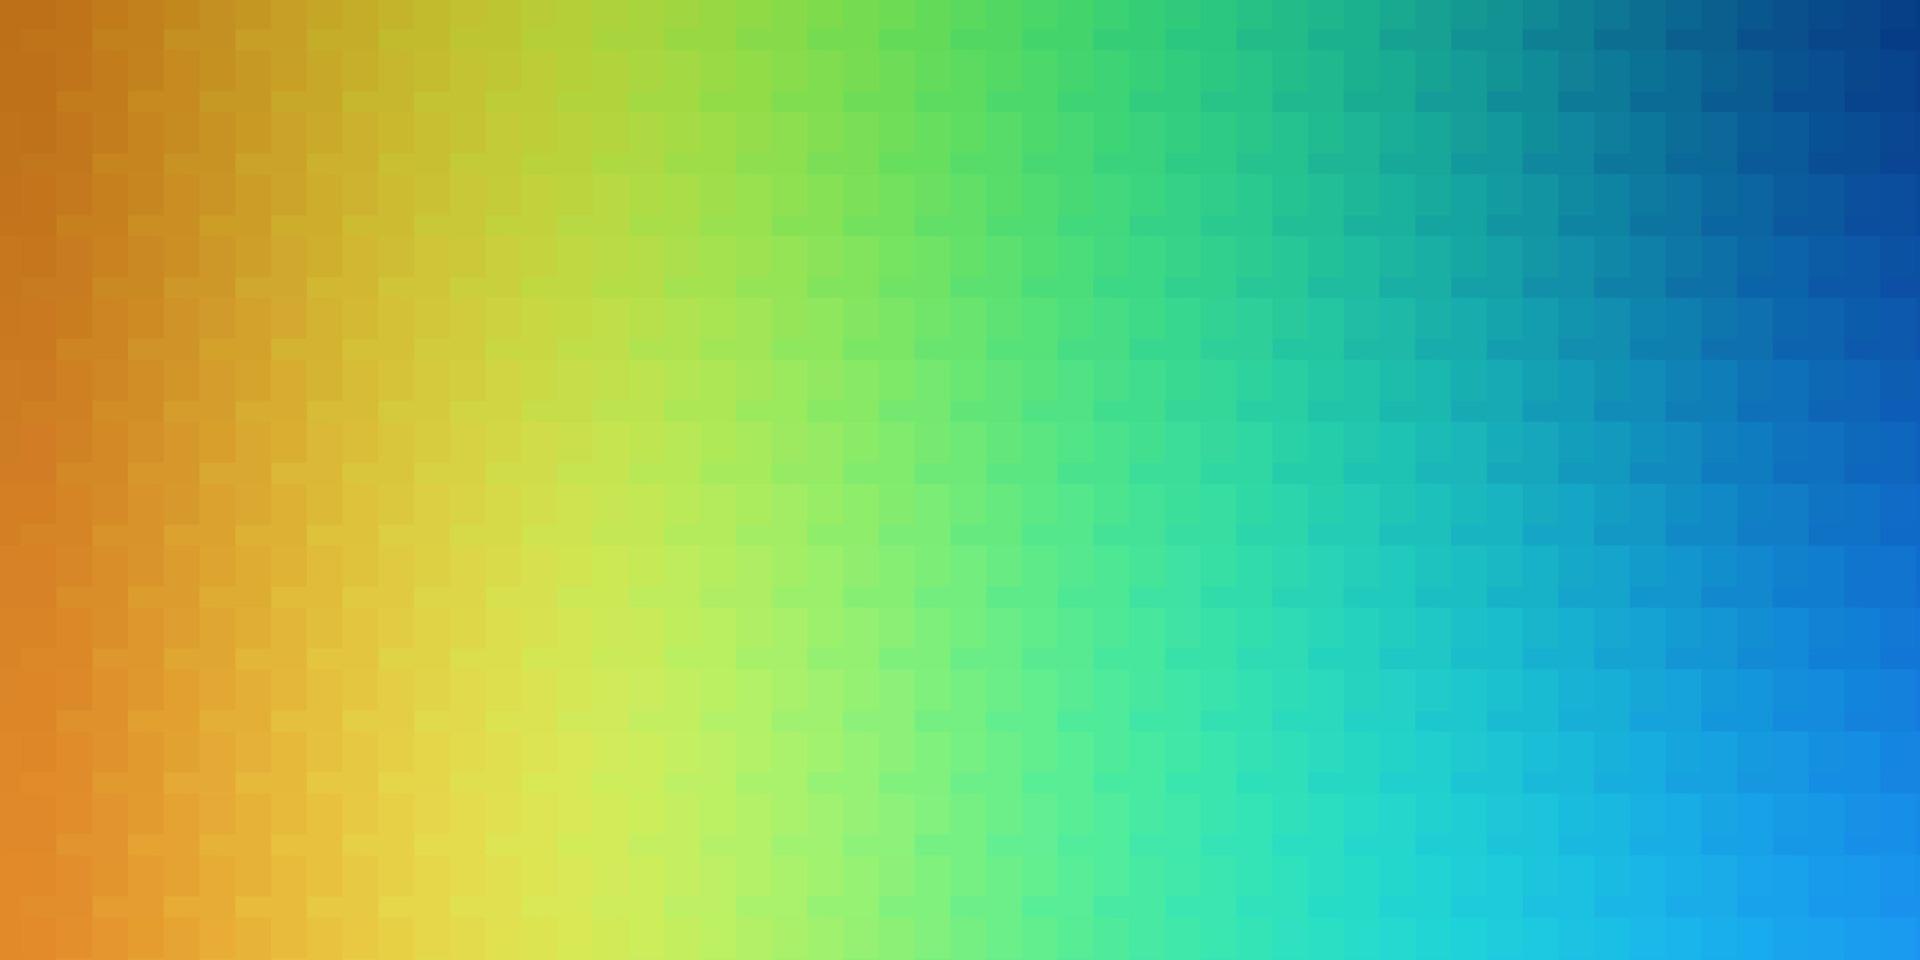 fundo vector azul e amarelo claro com retângulos.